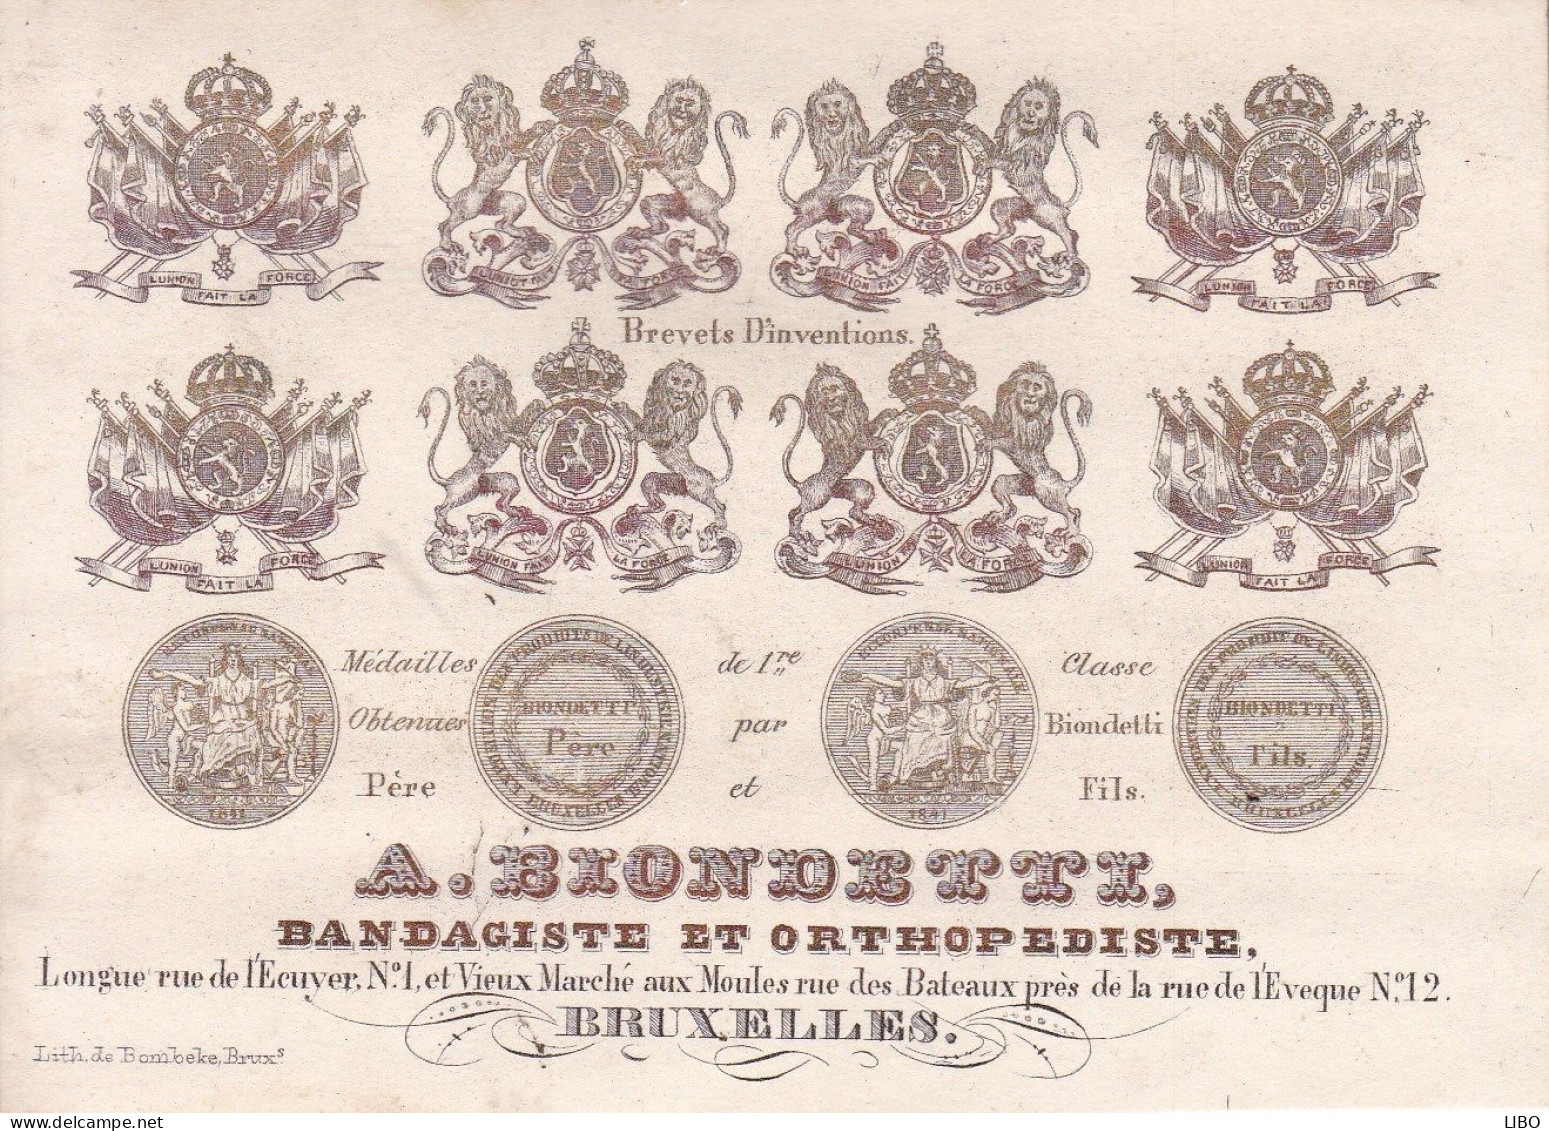 BRUXELLES BLONDETTZ Bandagiste Orthopédiste Vieux Marché Aux Moules Carte Porcelaine Années 1850-1860 - Cartes Porcelaine